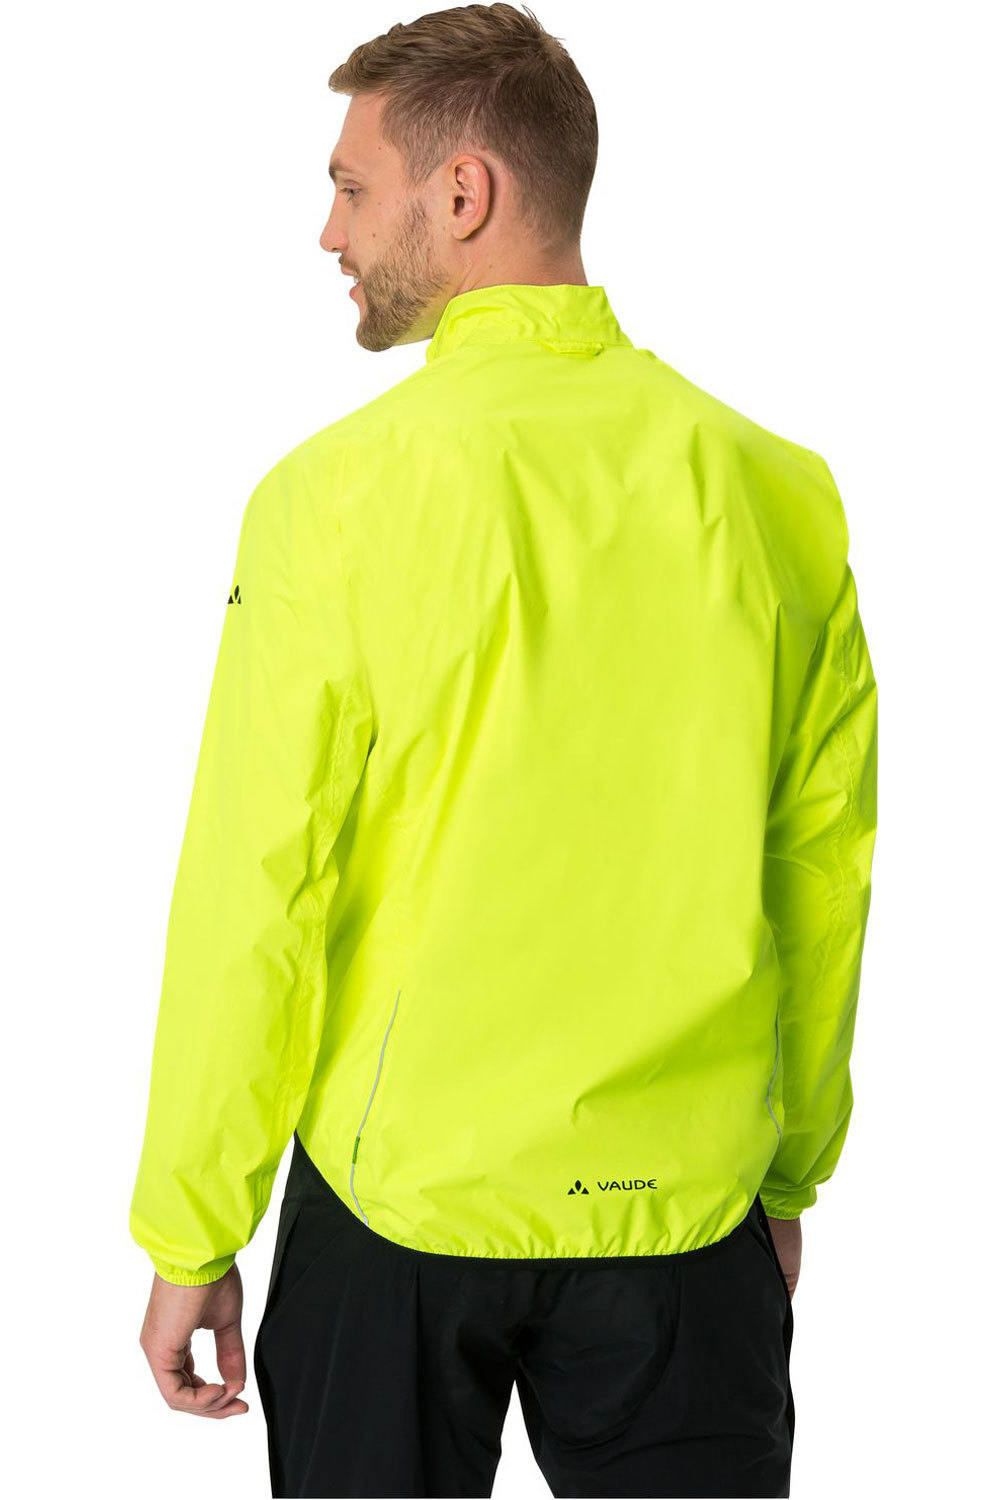 Vaude chaqueta impermeable ciclismo hombre Men's Drop Jacket III vista trasera